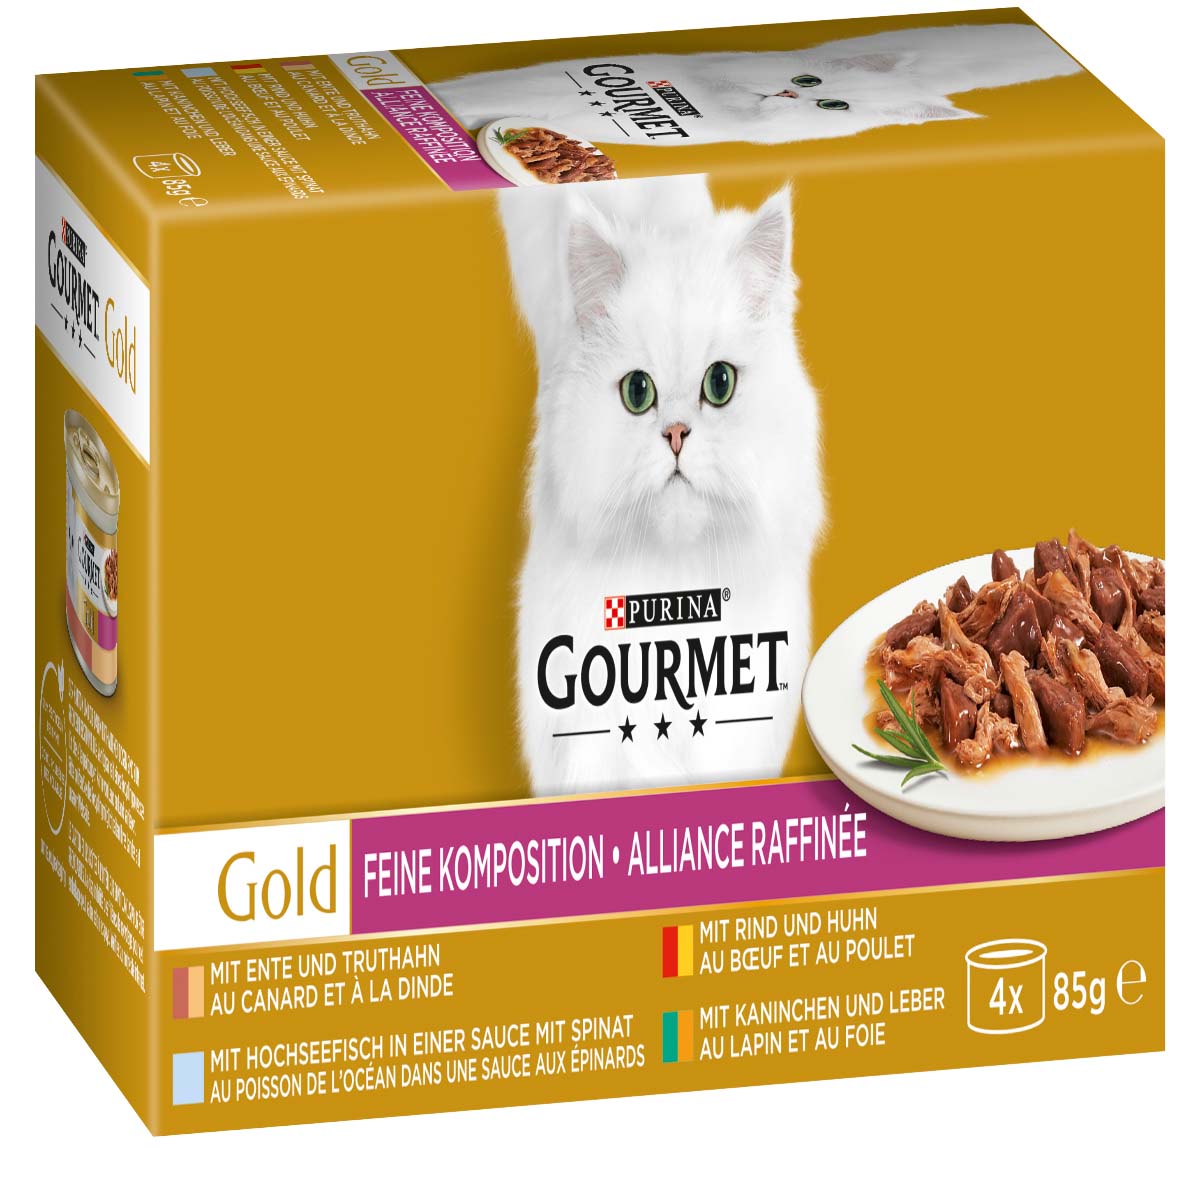 GOURMET Gold Feine Komposition Mixpaket 12x4x85g von Gourmet